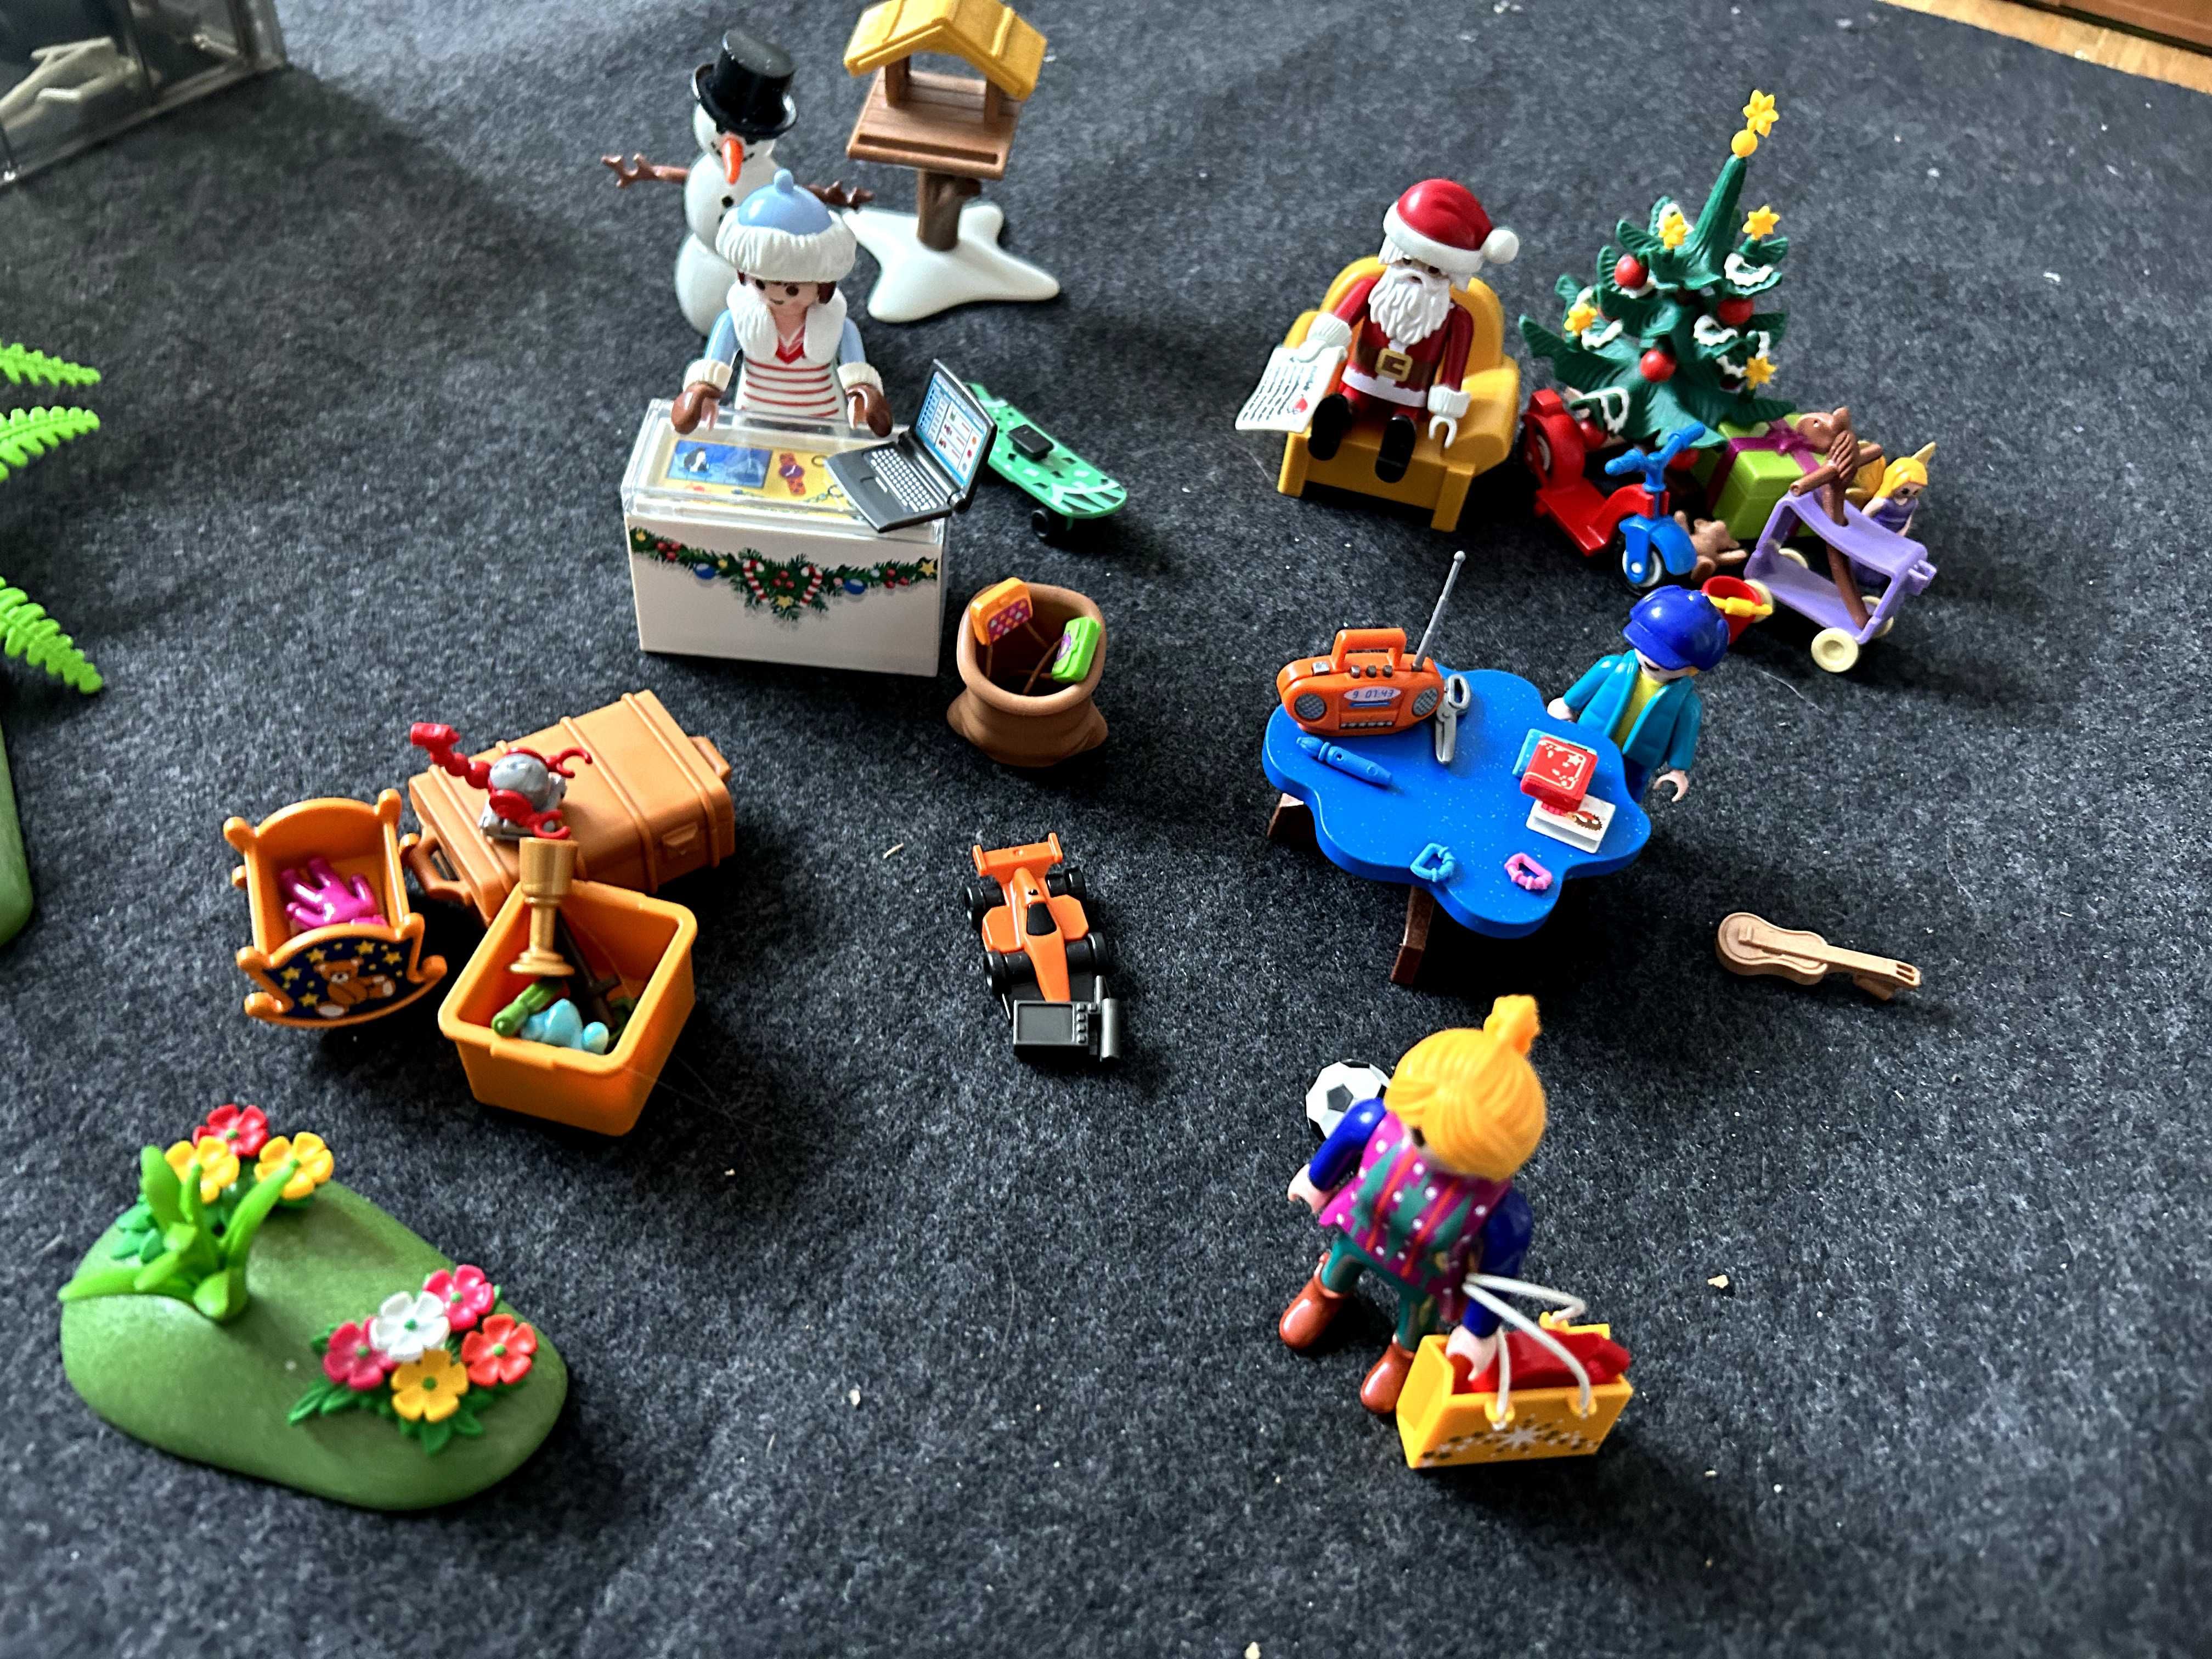 Playmobil plac zabaw, sklep z zabawkami